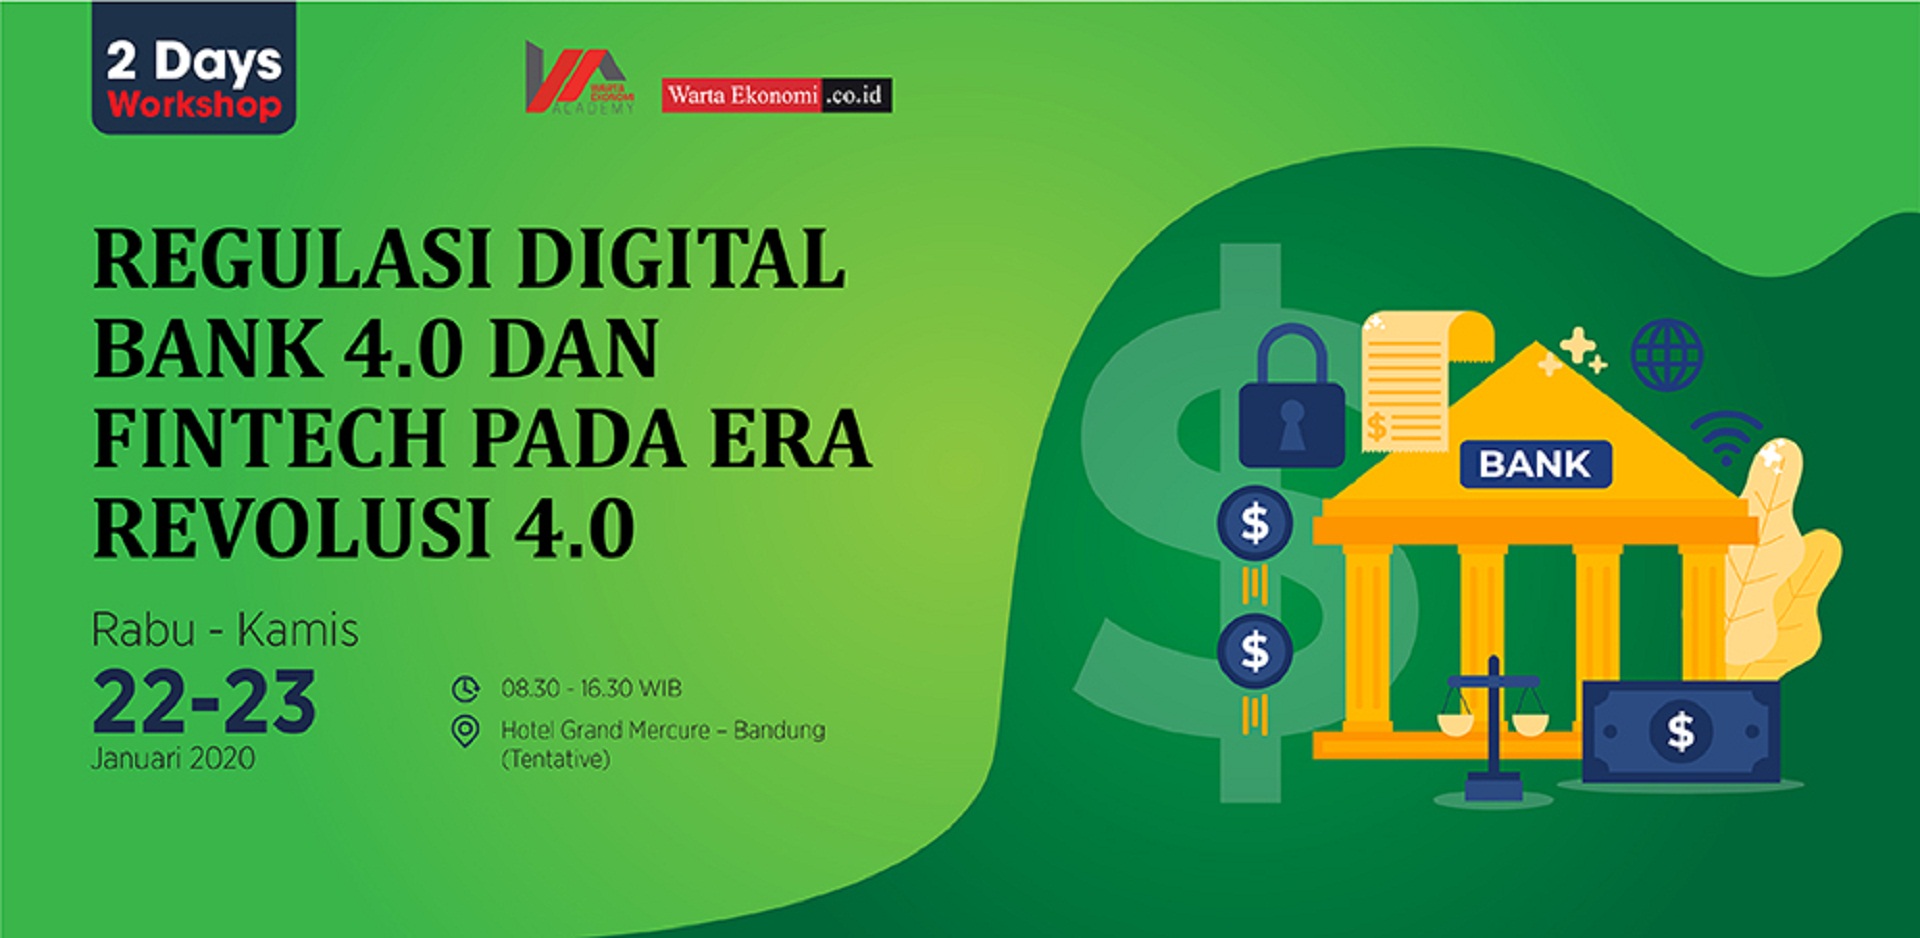 Regulasi Digital Bank 4.0 dan Fintech pada Era Revolusi 4.0